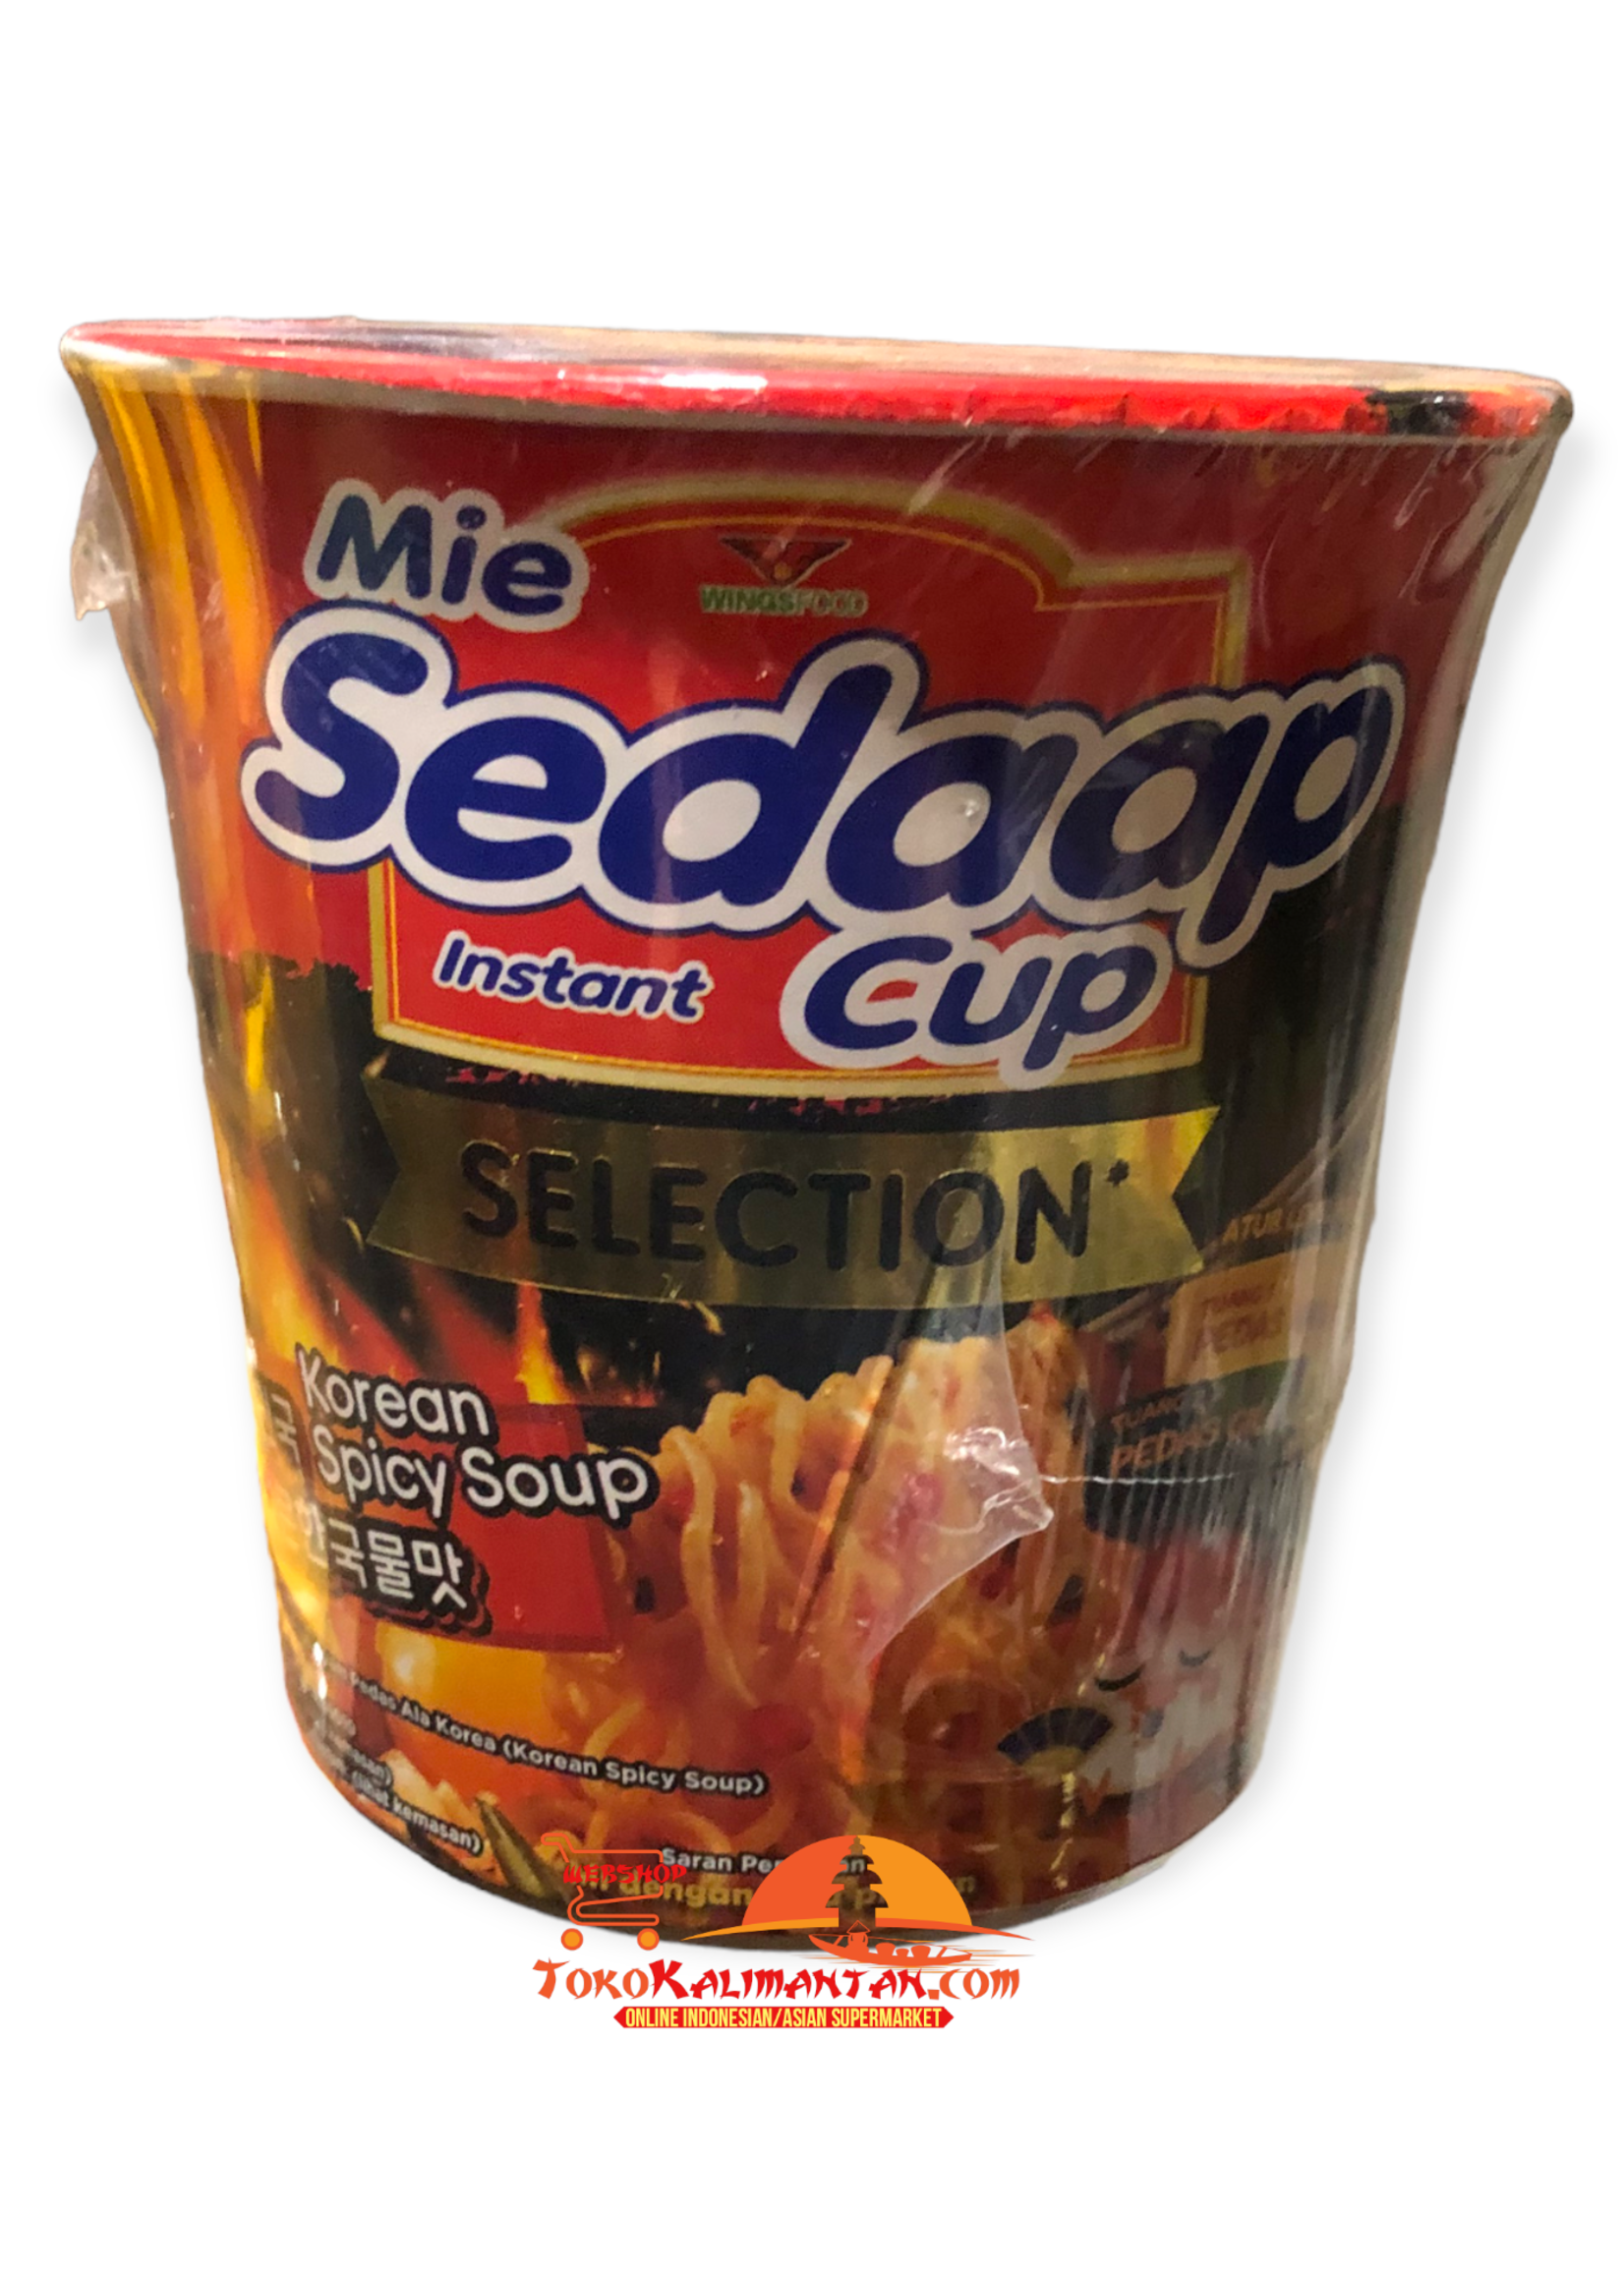 Mie sedaap cup Mie sedaap cup - rasa korean spicy chicken soup